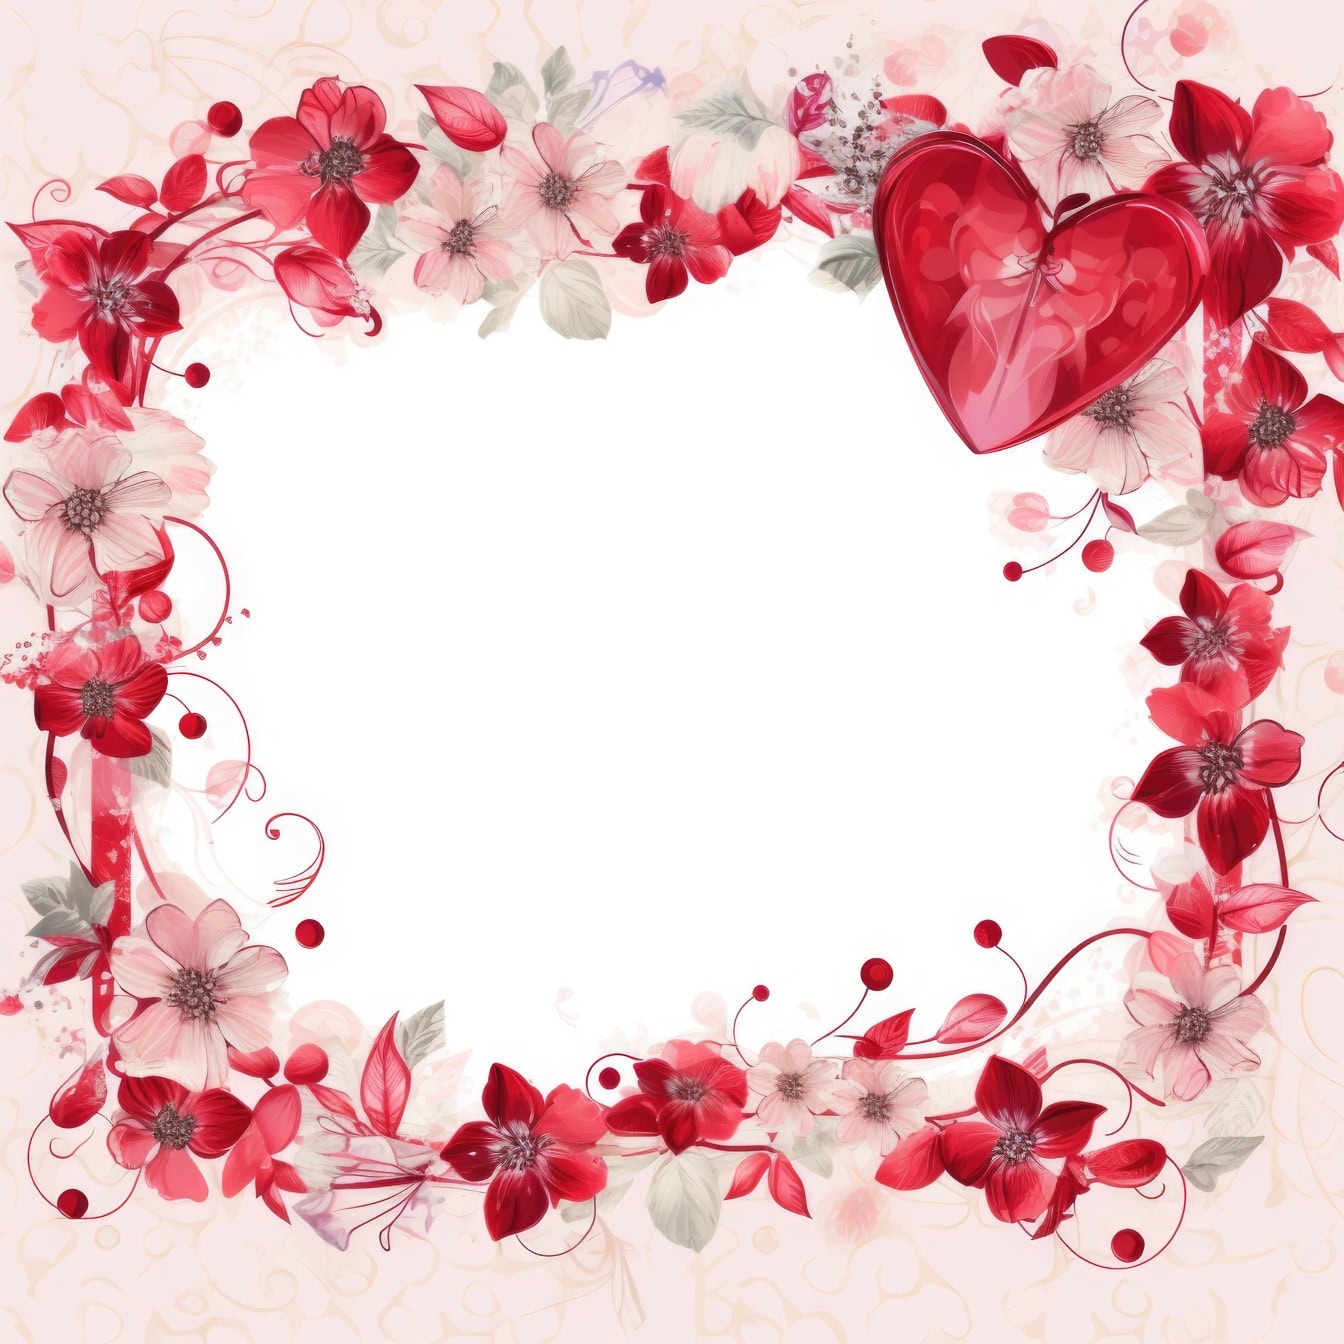 เทมเพลตการ์ดเชิญวันวาเลนไทน์ดอกไม้โรแมนติกพร้อมกรอบดอกไม้และหัวใจสีแดงเข้ม